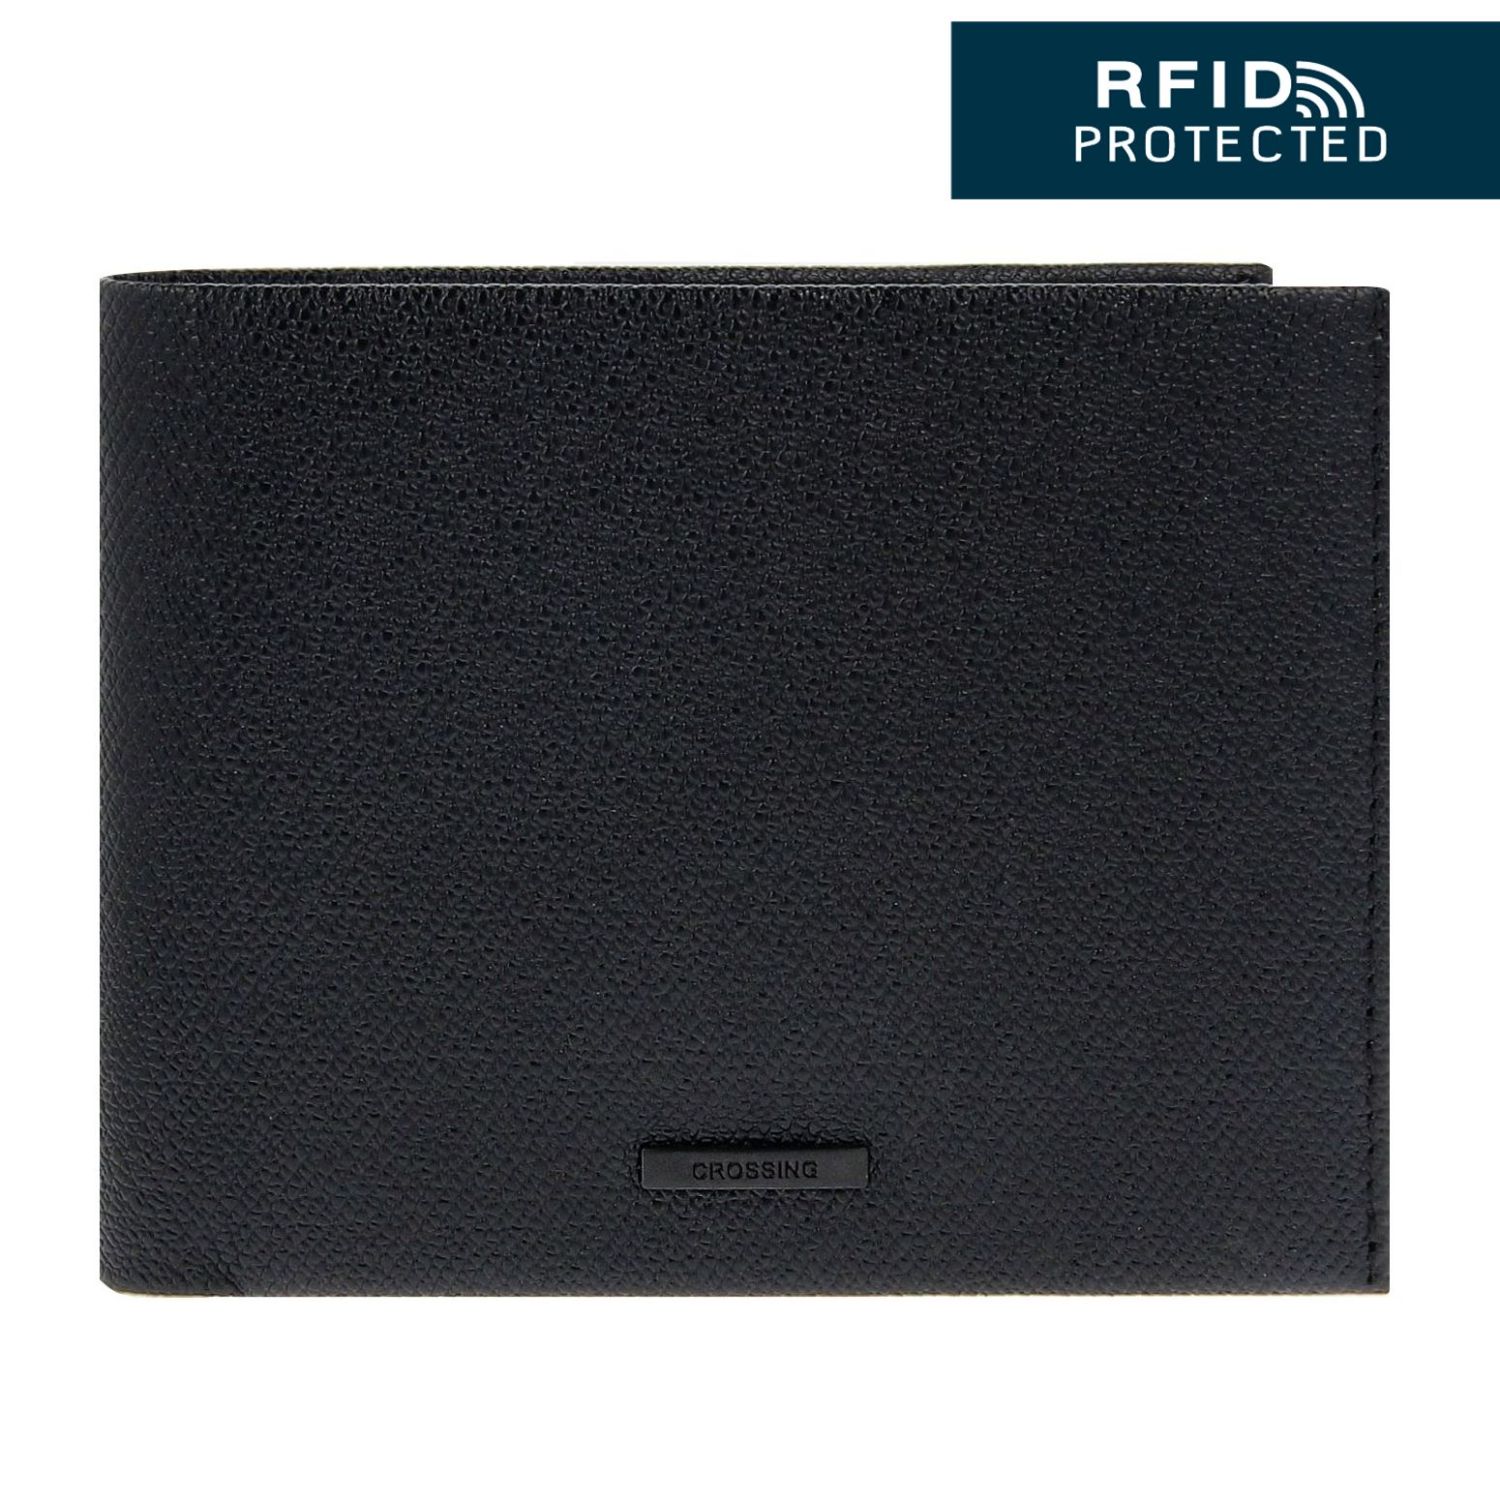 Crossing-Elite-Bi-fold-Wallet-With-Coin-Pocket-13-Card-Slots-RFID-Black-1-1.jpg